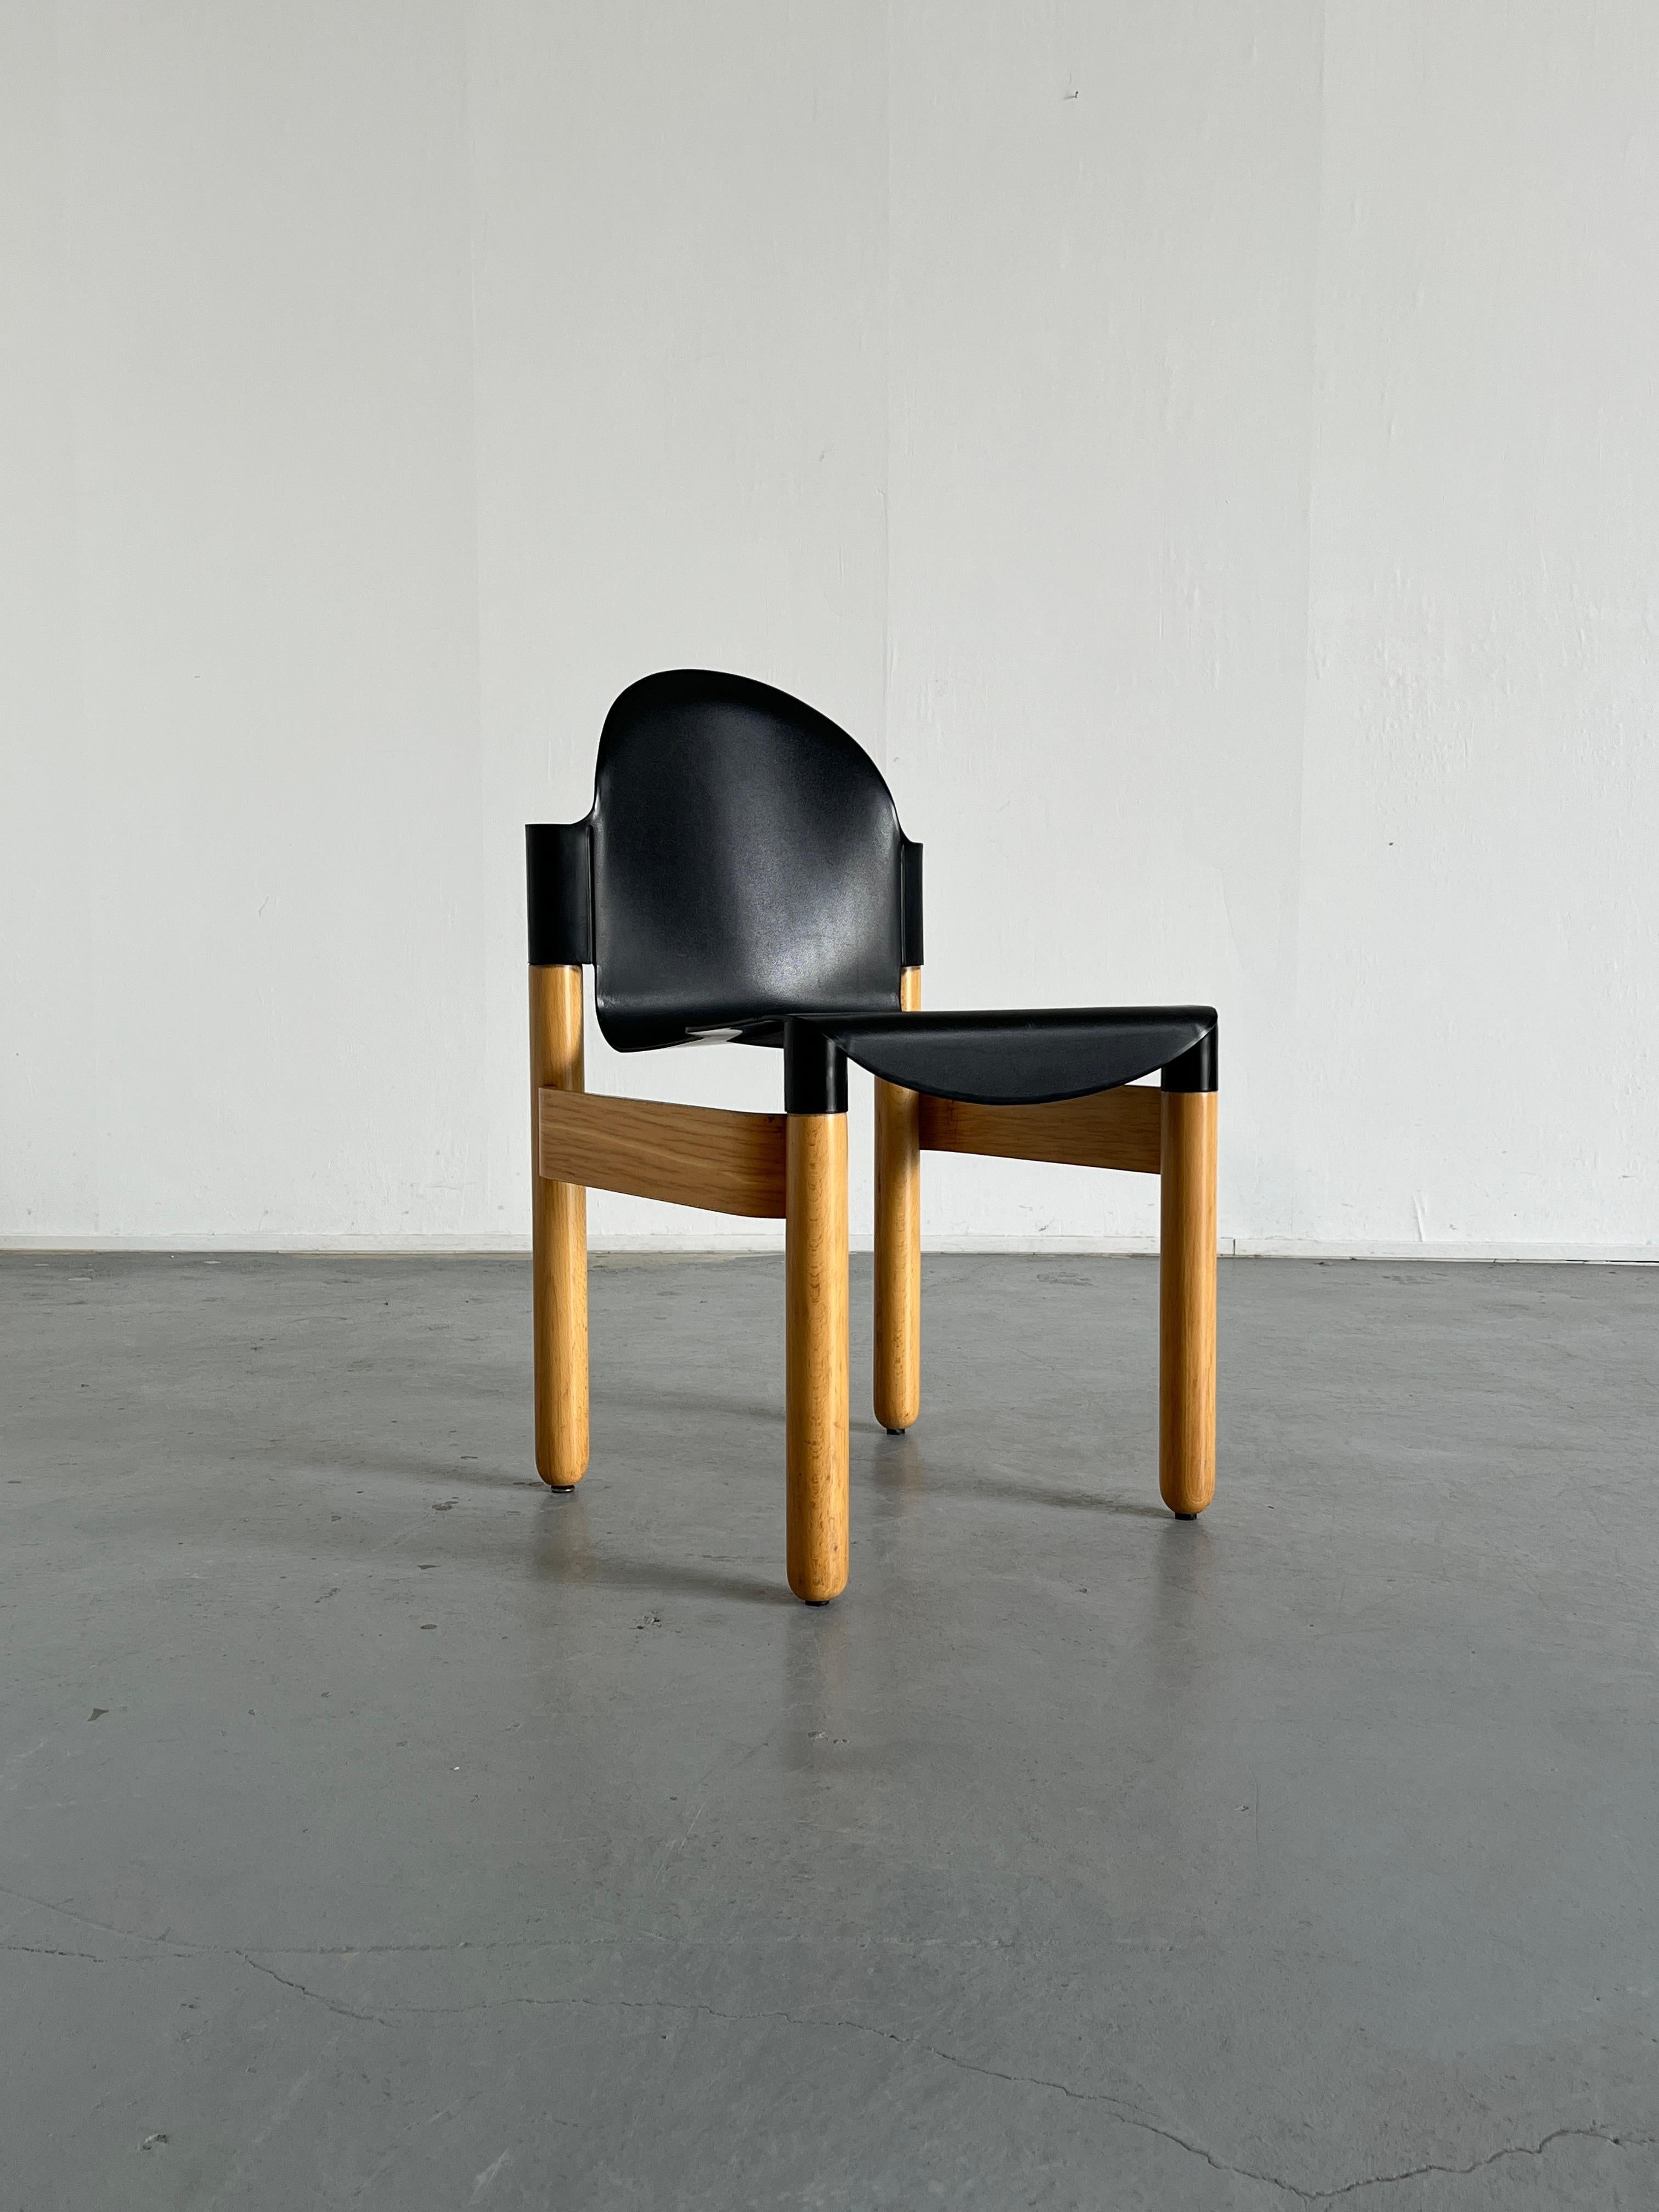 Ein alter Thonet Flex 2000 Stuhl, entworfen von Gerd Lange für Thonet und hergestellt von Thonet im Jahr 1994. Gestempelt.
Bequem und hochwertig verarbeitet. Flexibler Kunststoffsitz. Leichtes Gewicht. 

Insgesamt in gutem Vintage-Zustand, mit